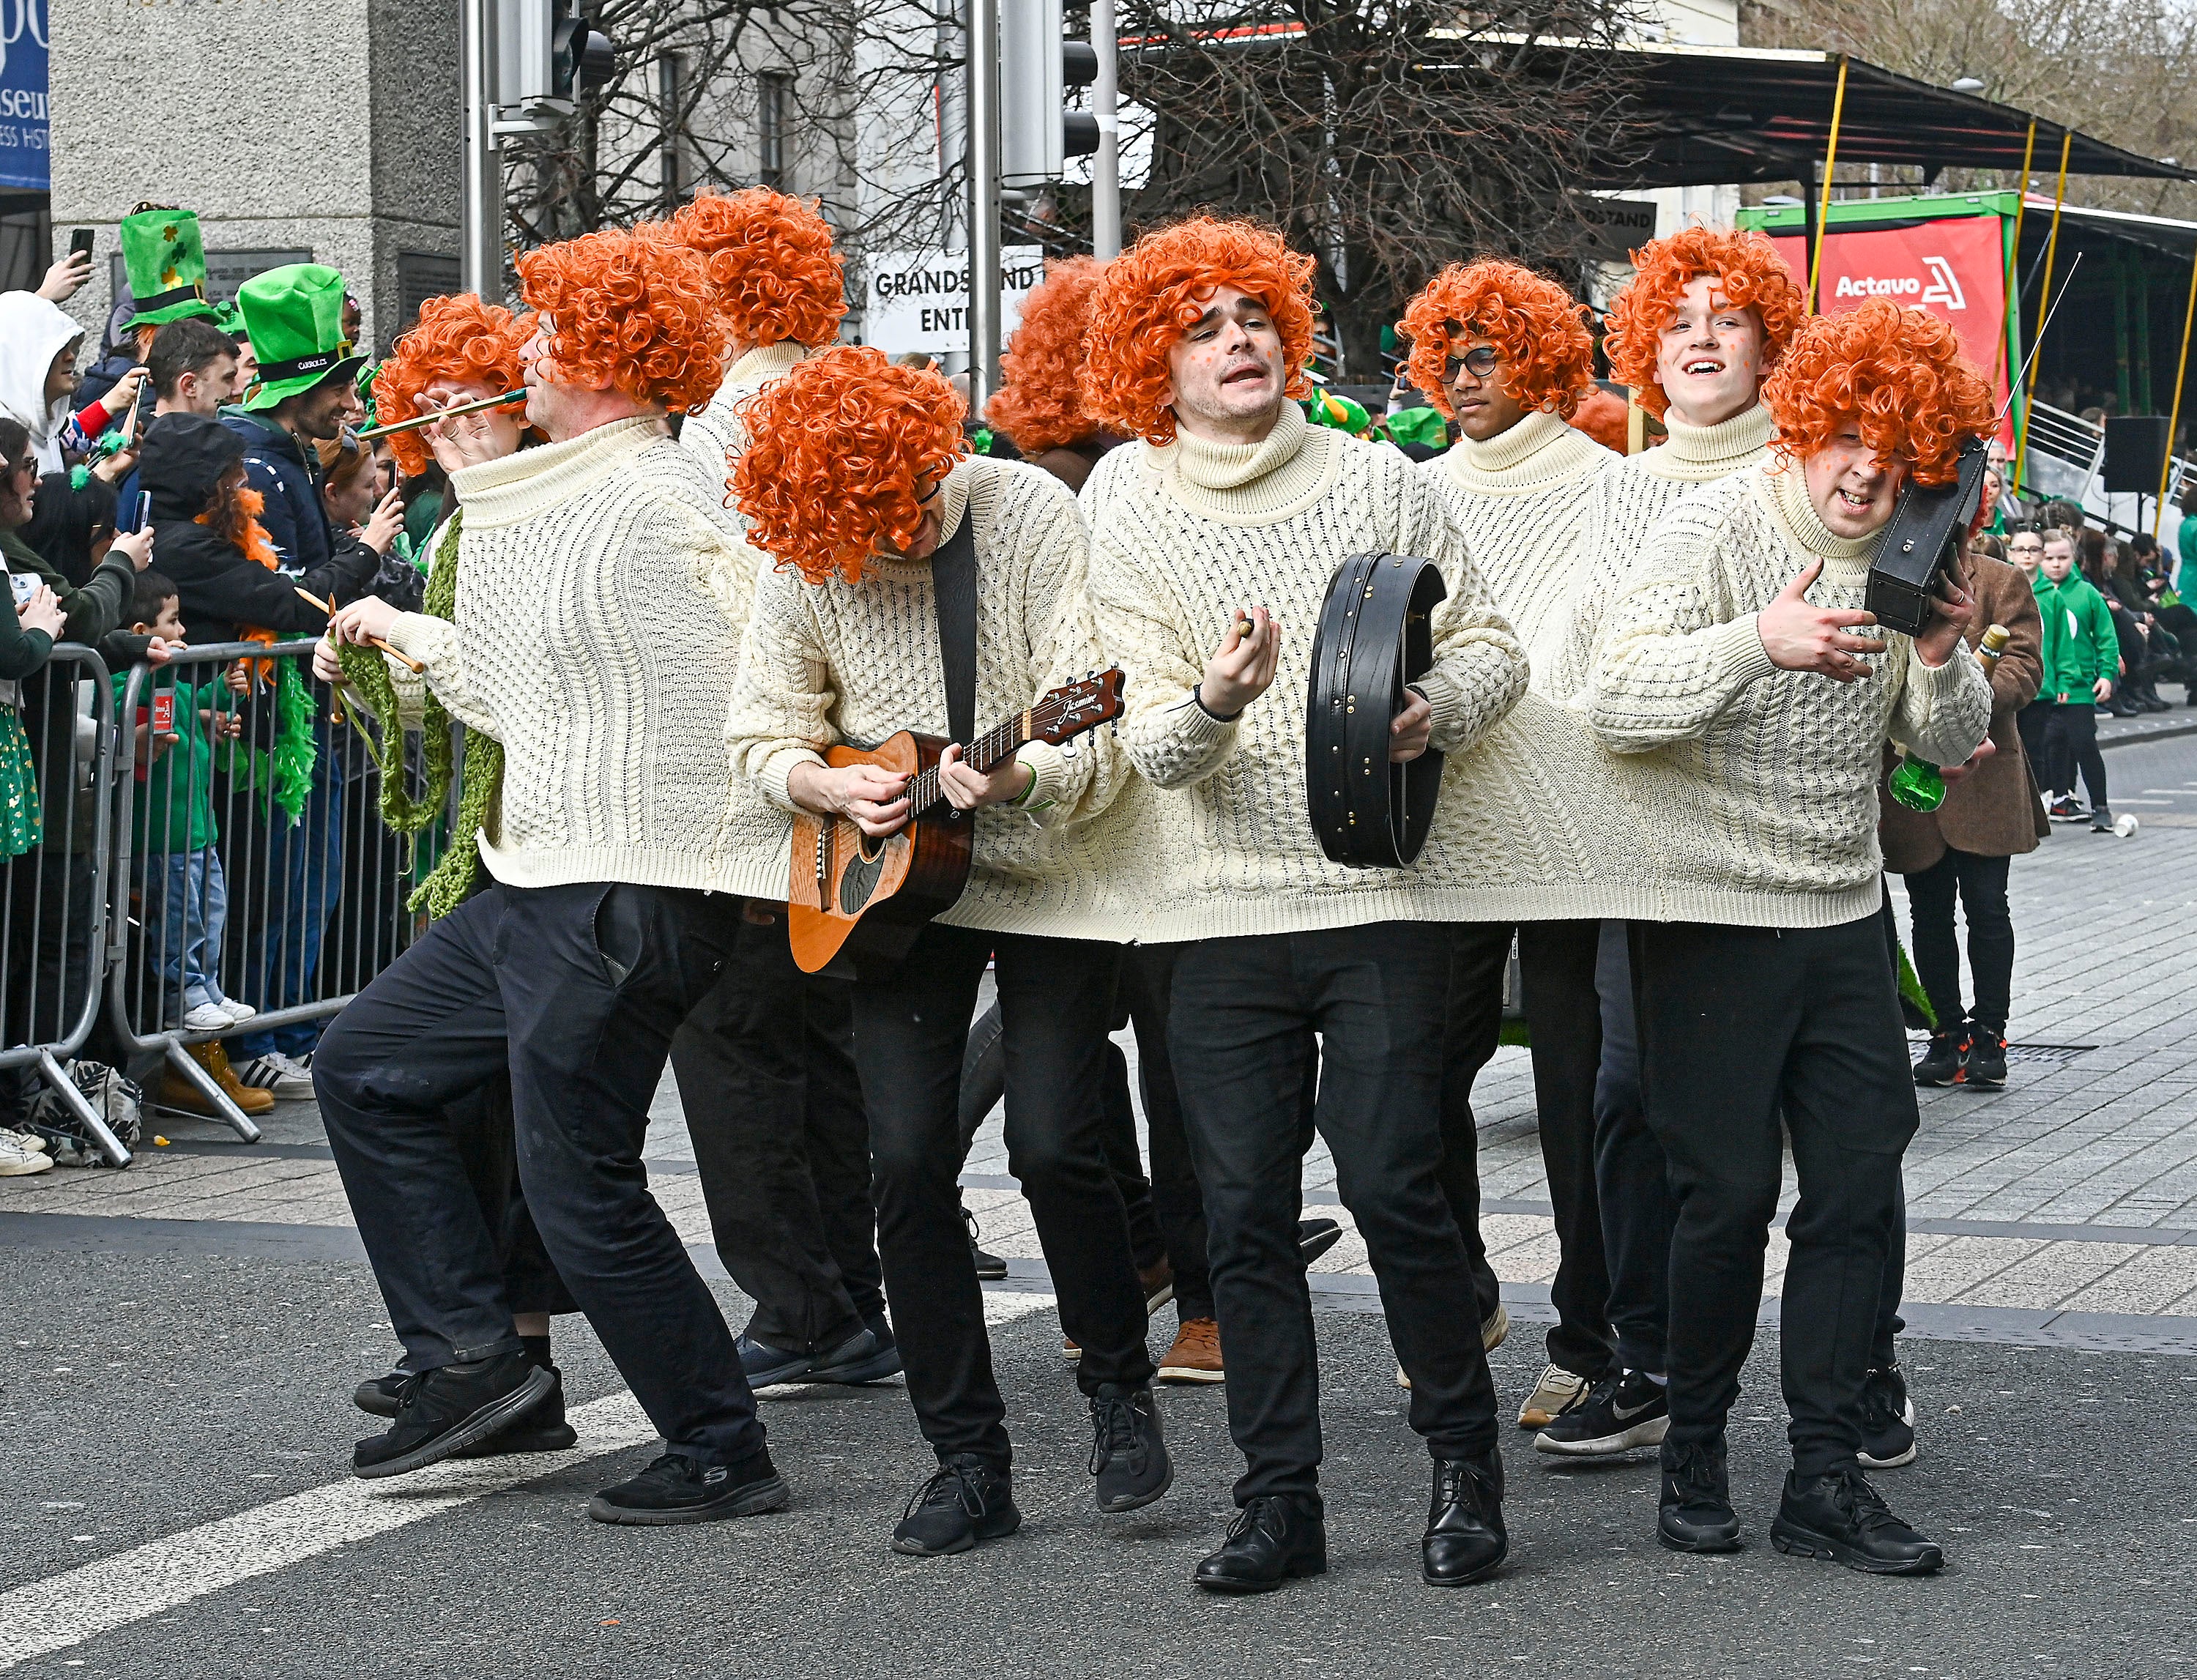 St Patrick's Day Parade - Dublin